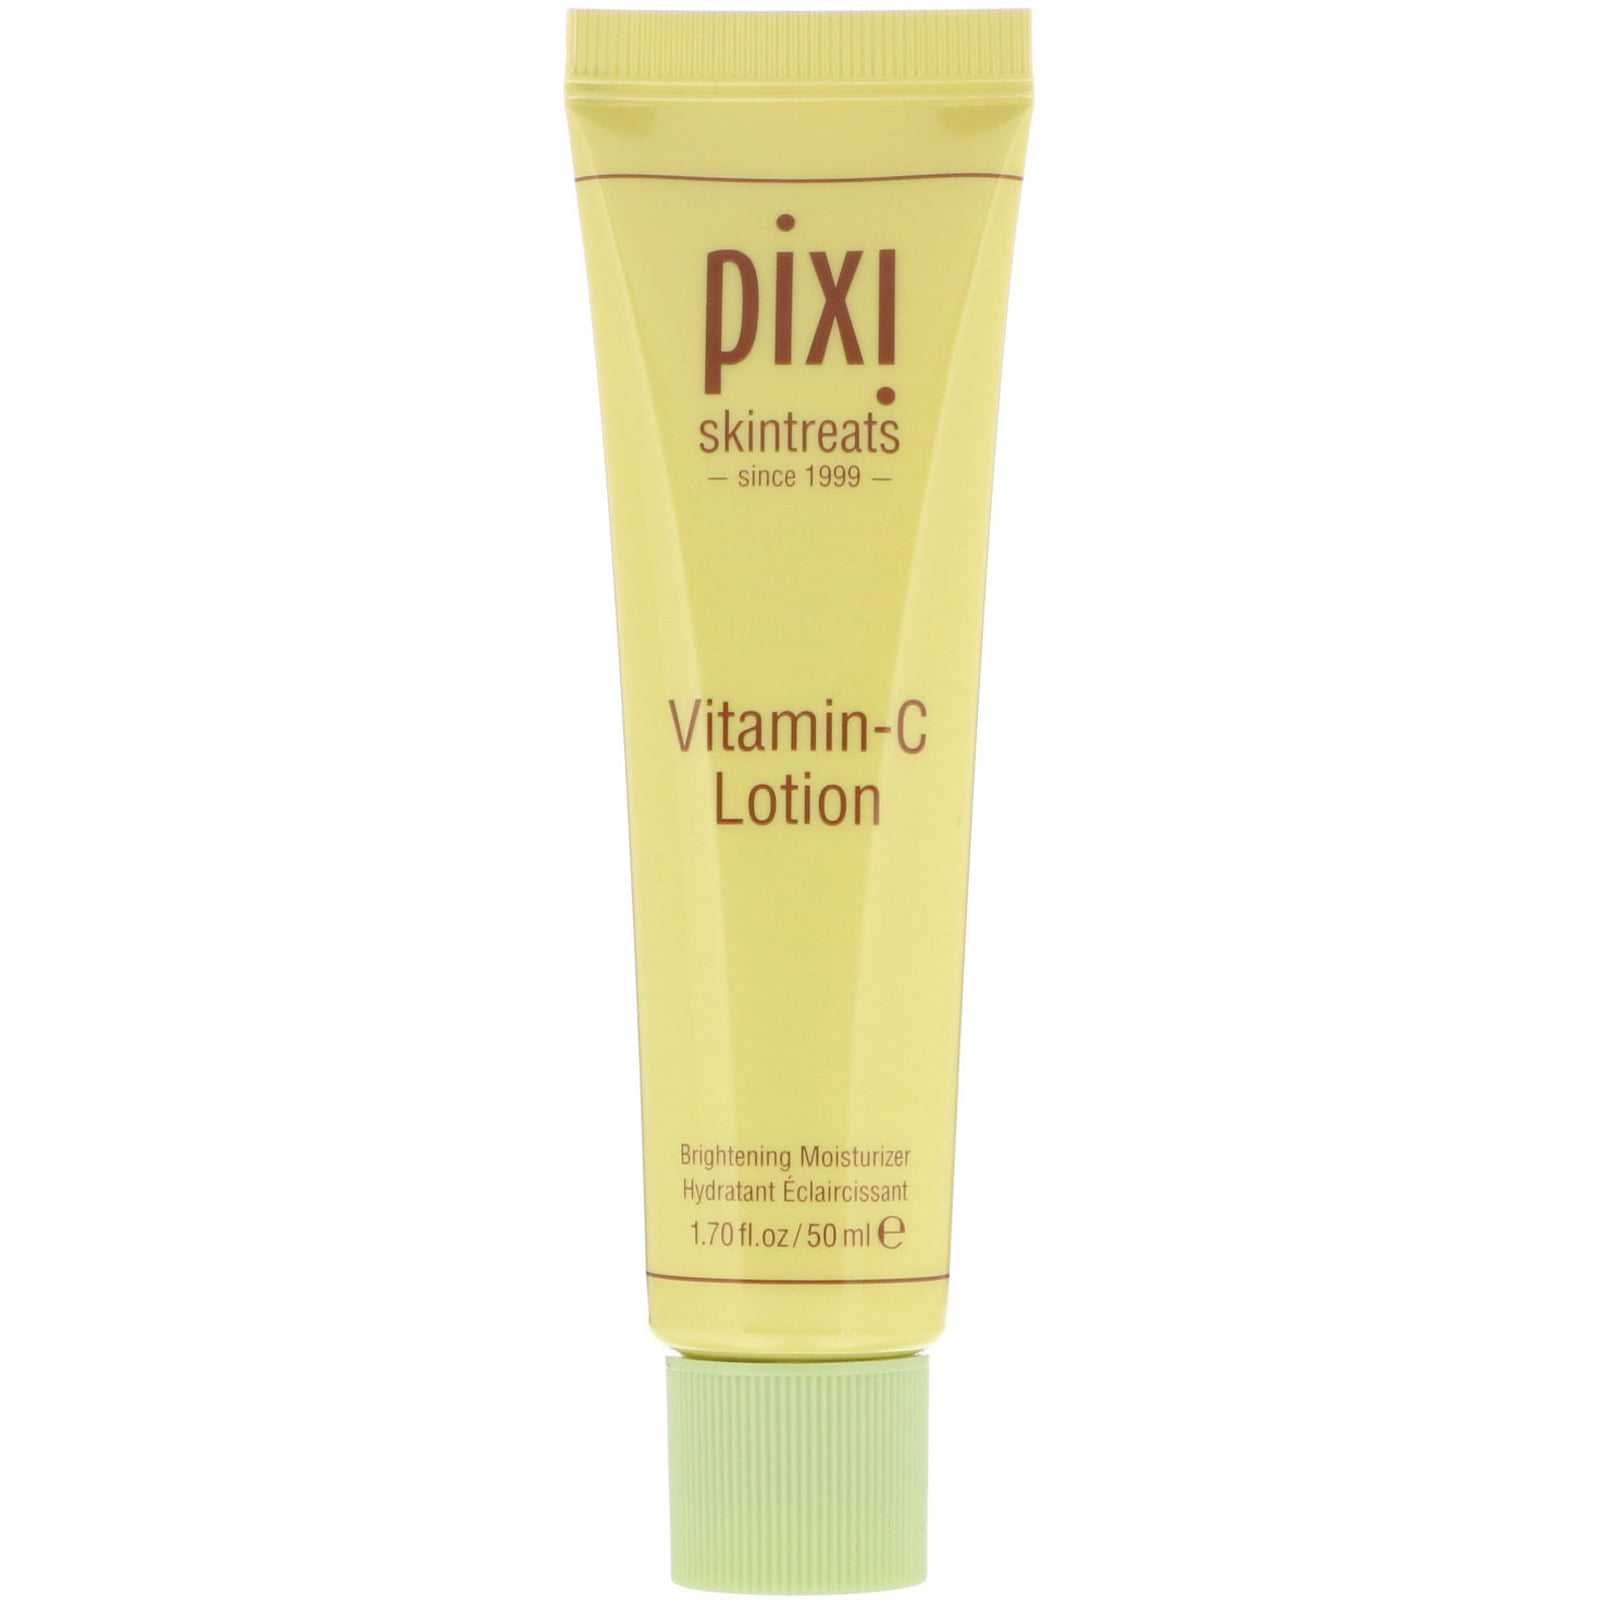 Bunke af Afslut Gå en tur Pixi Beauty Skintreats Vitamin-C Lotion Brightening Moisturizer 1 7 fl oz  50 ml - Walmart.com